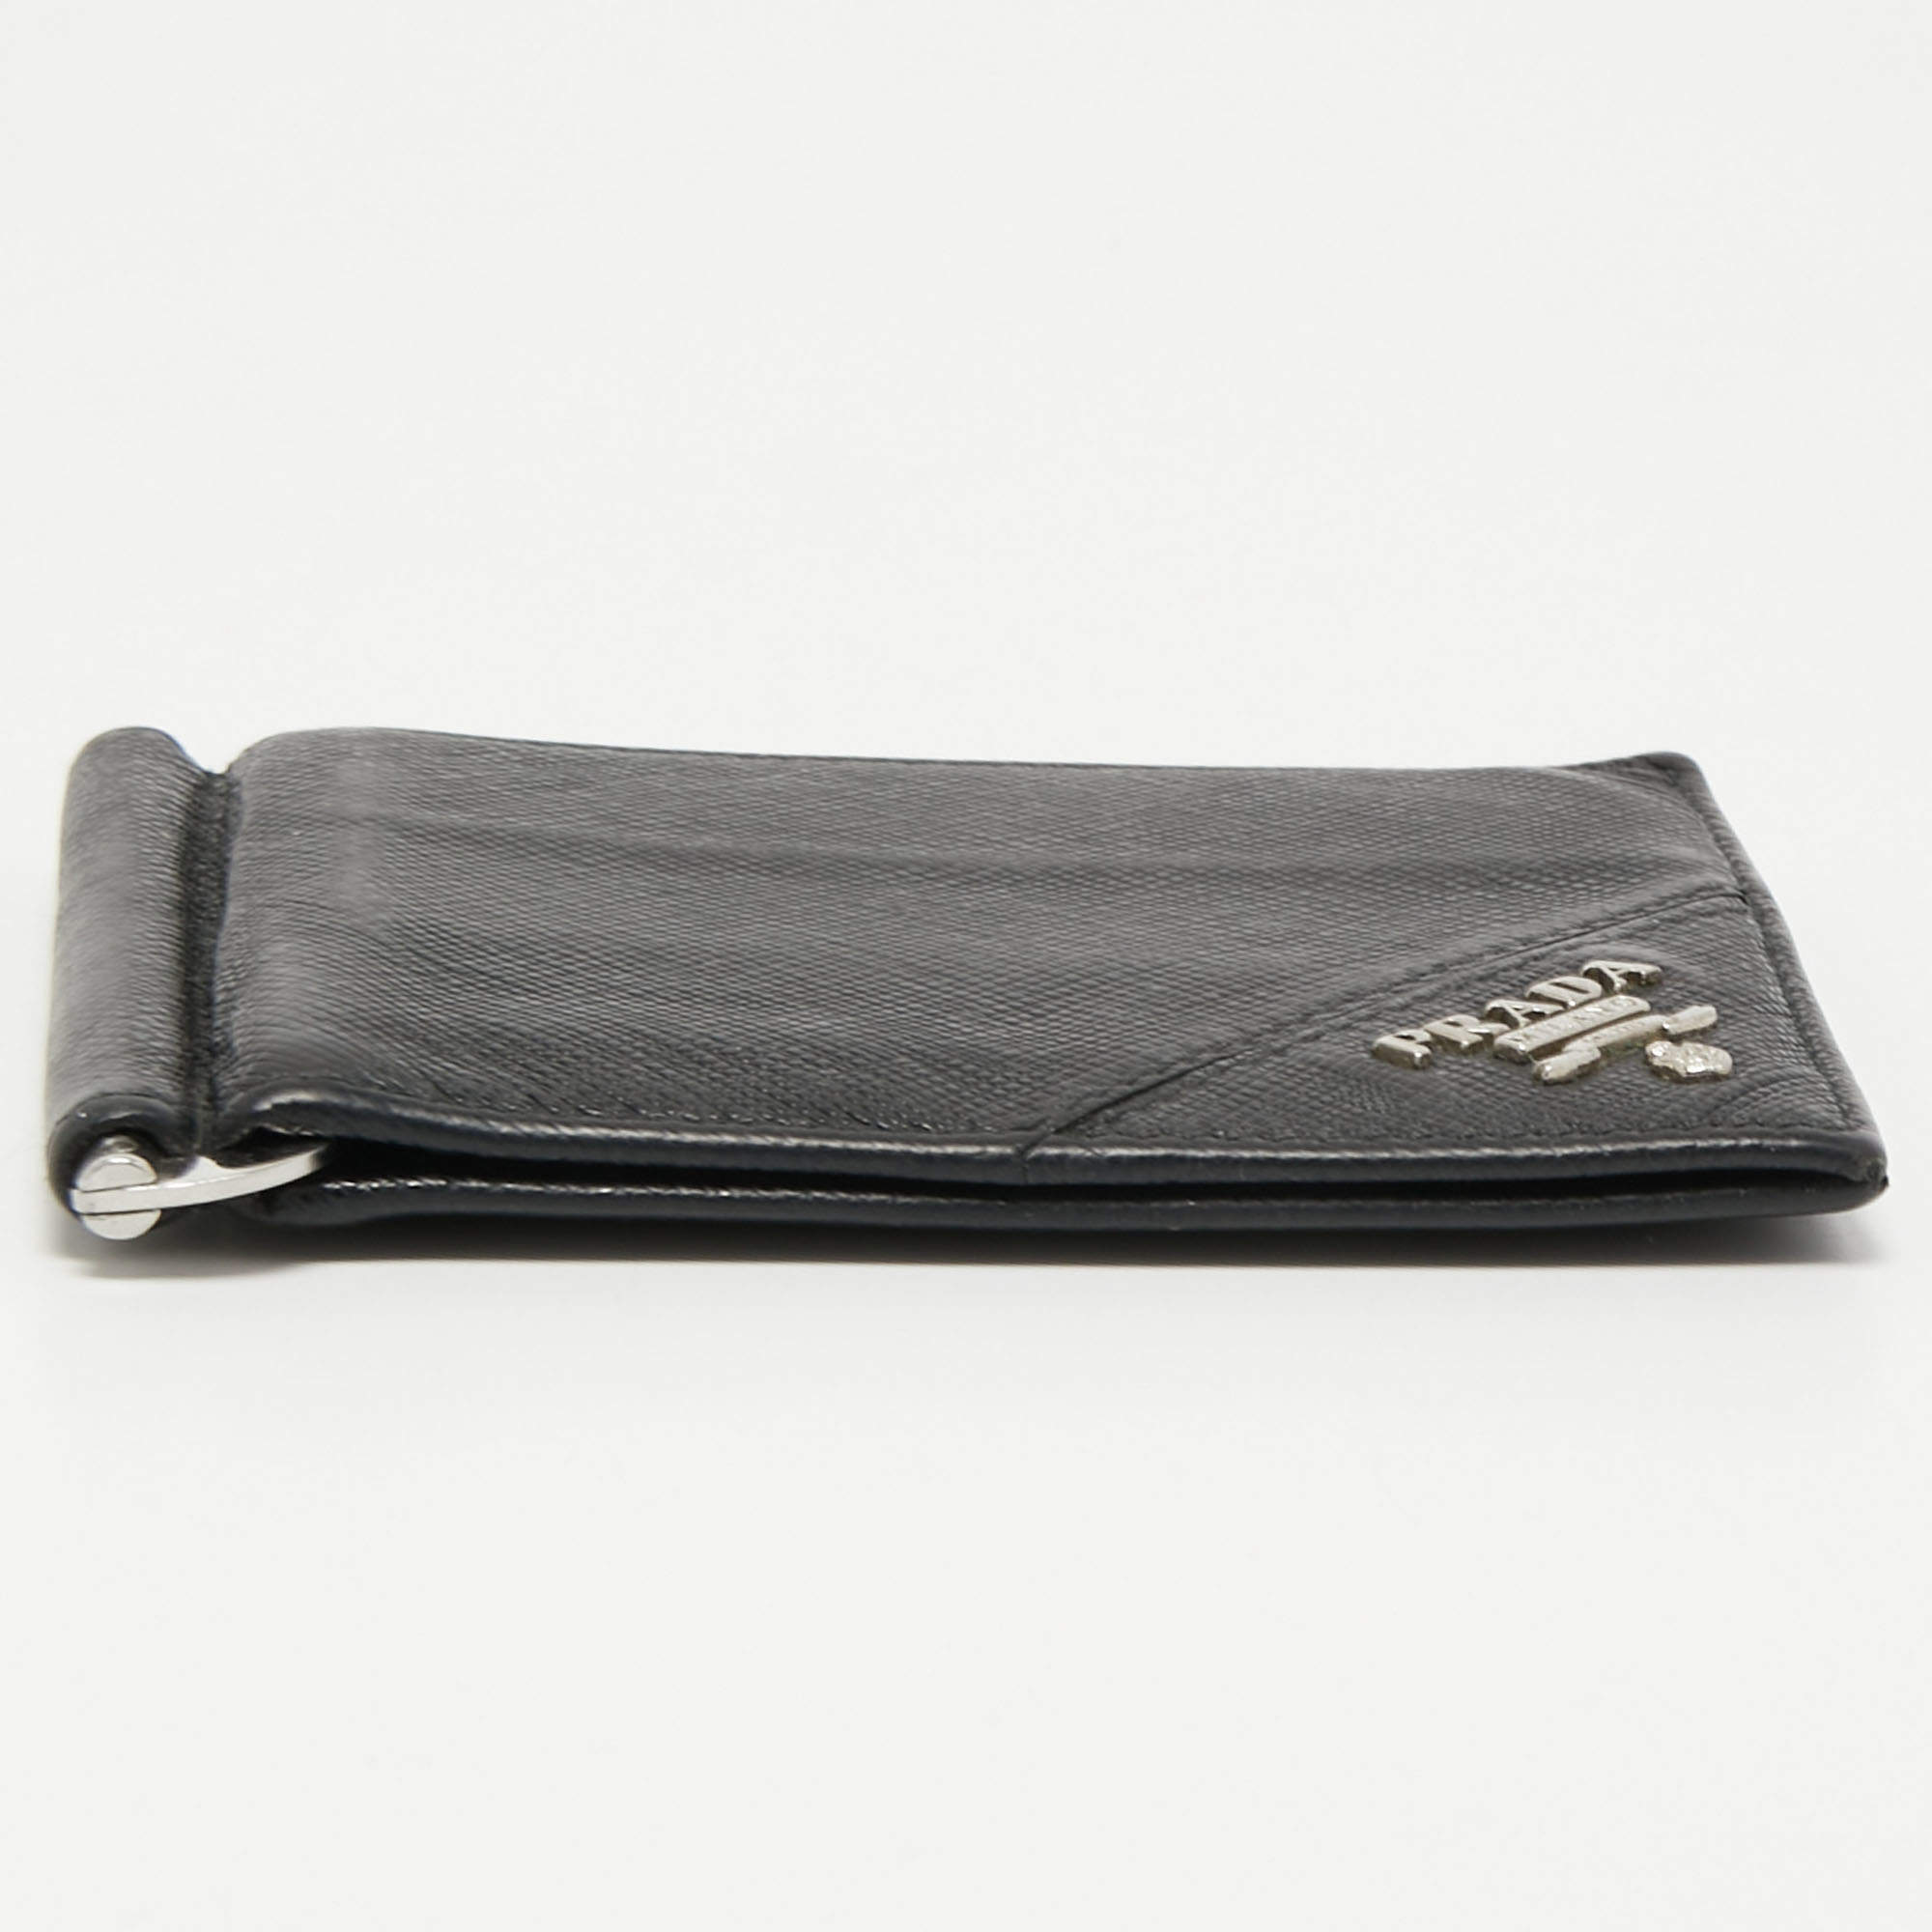 Prada wallet money clip กระเป๋าสตางค์ พราด้า ของแท้ ส่งฟรีEMS ทั้ง